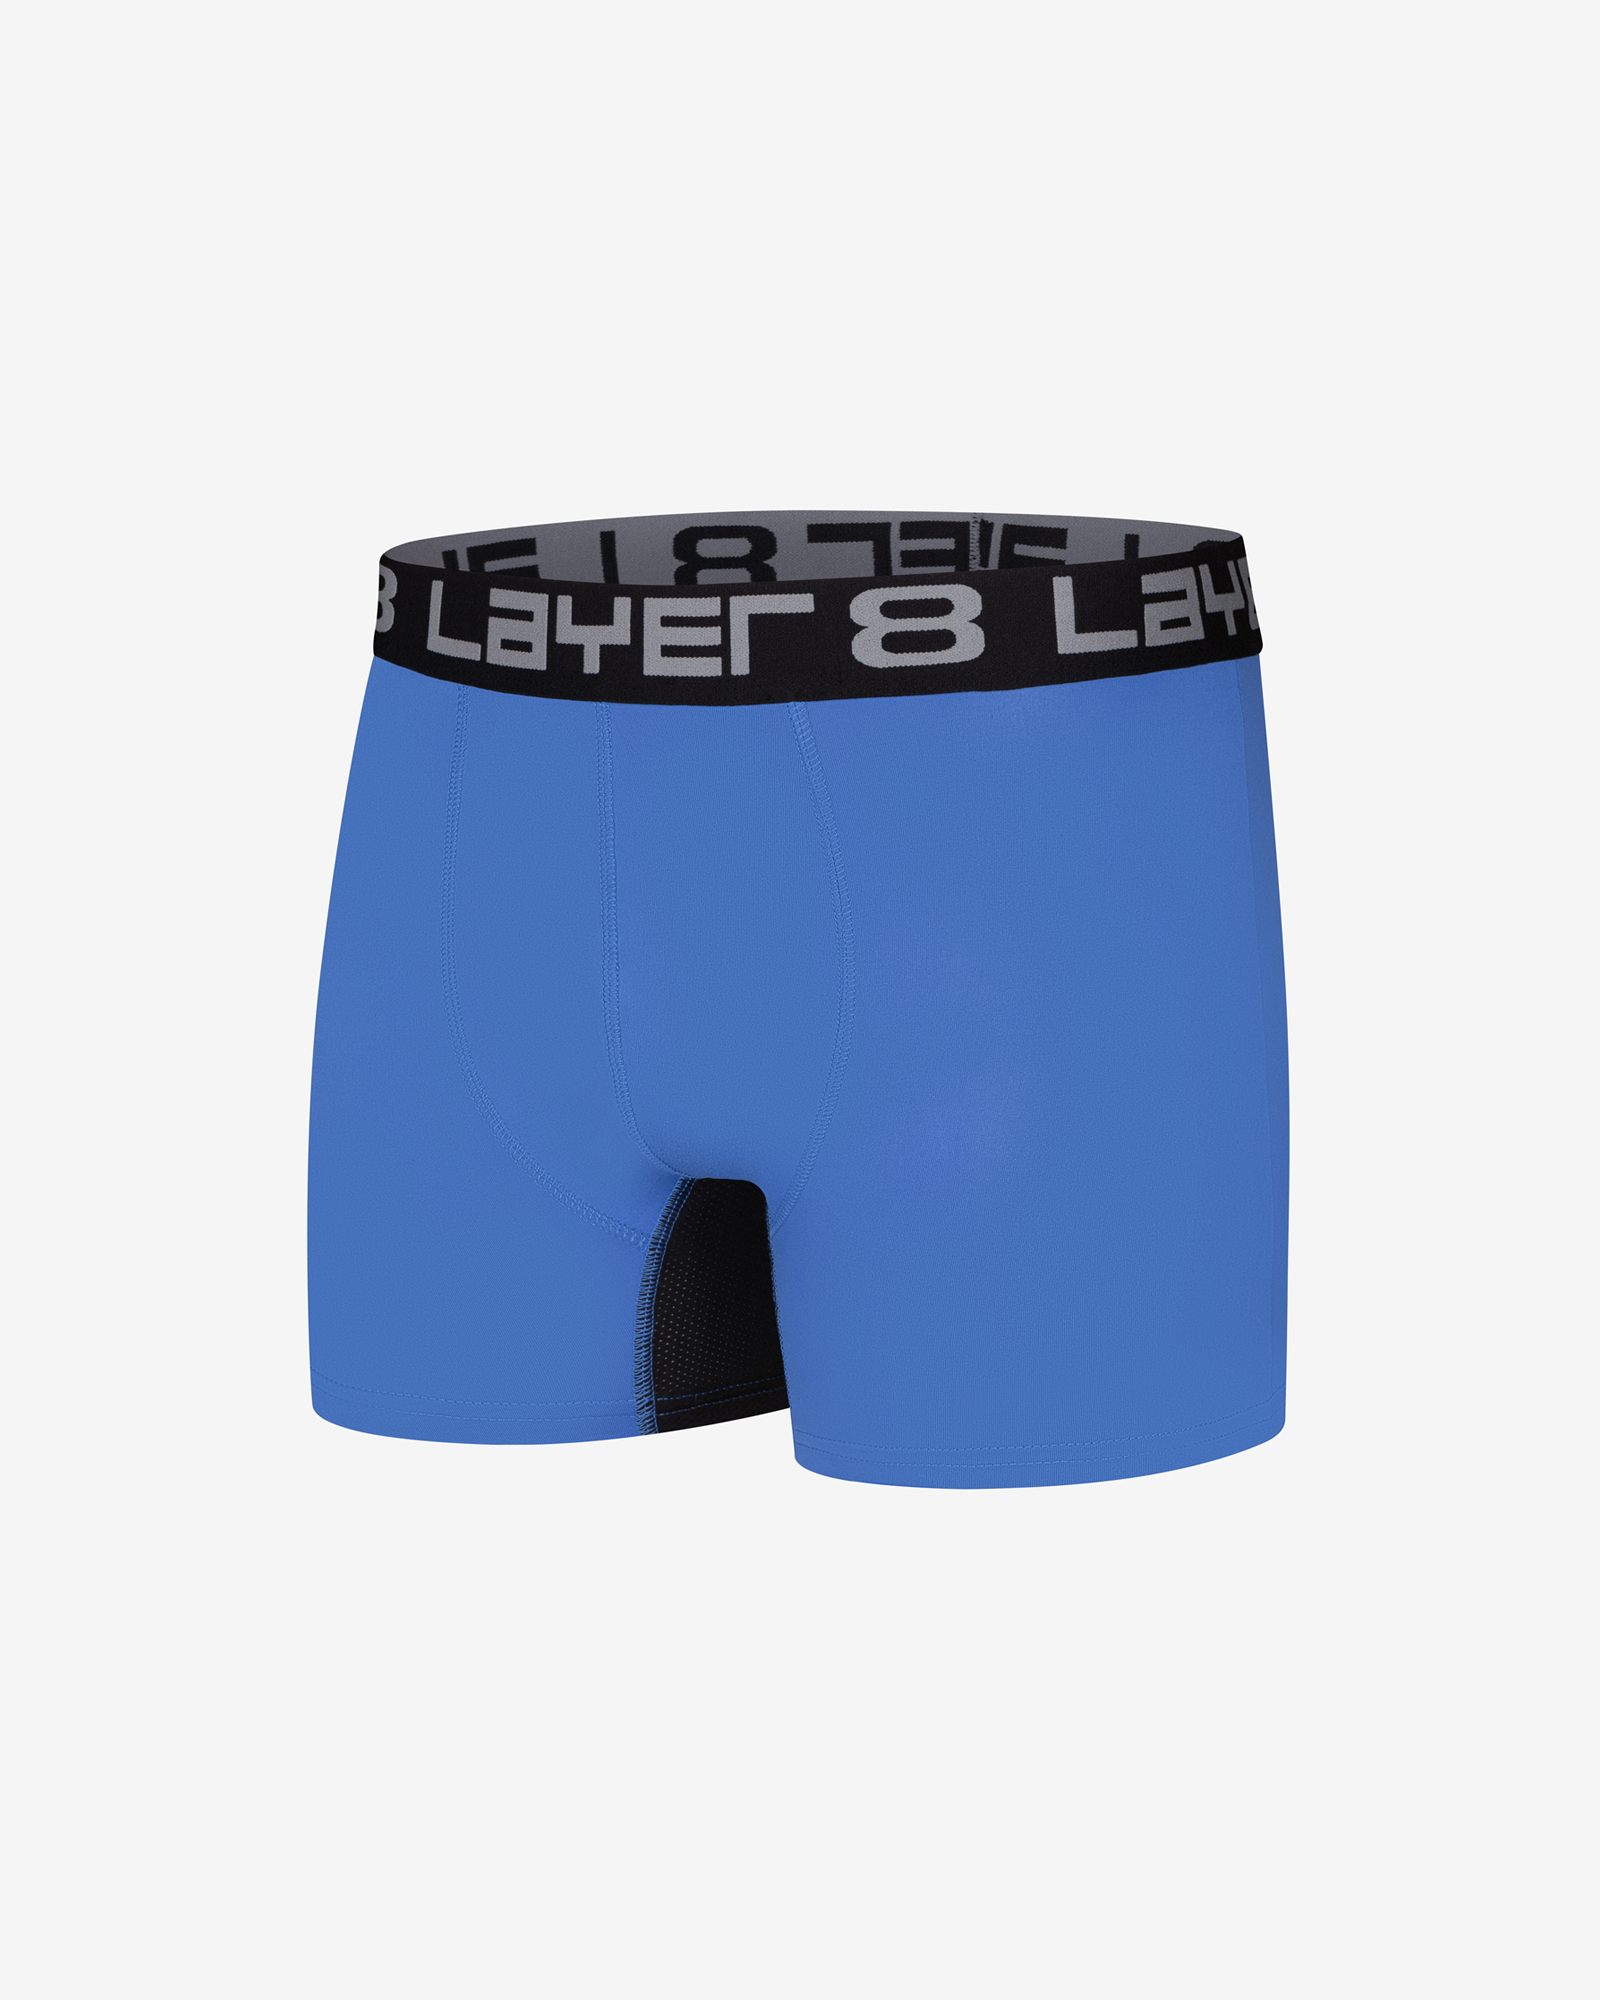 Layer 8 Men's 6-Pack Big Boys Underwear Performance Sports Boxer Briefs